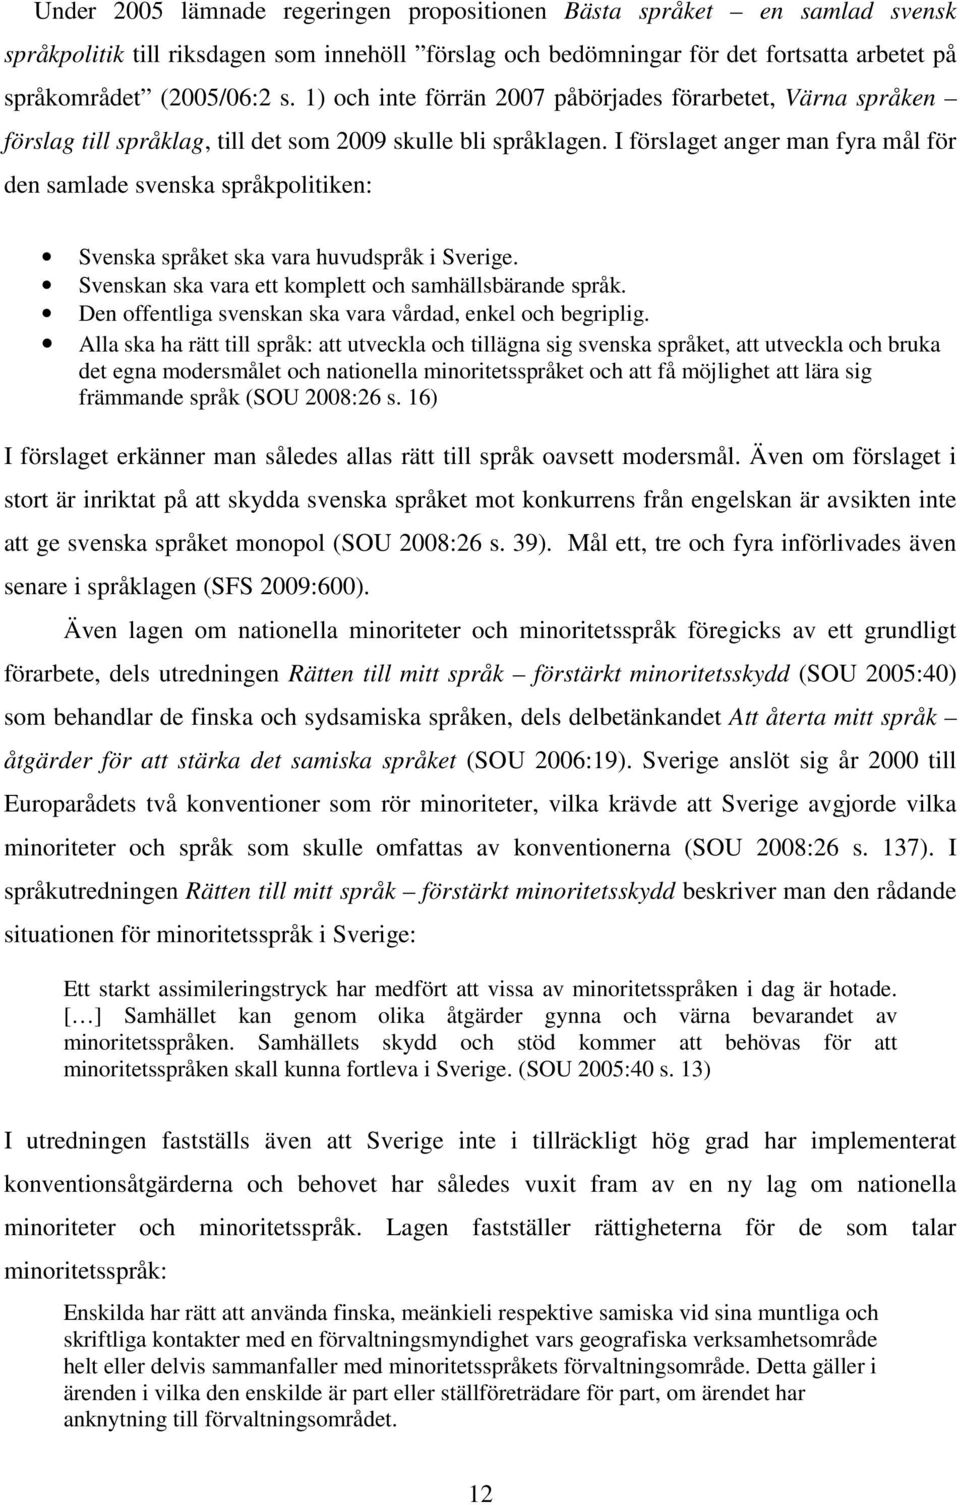 I förslaget anger man fyra mål för den samlade svenska språkpolitiken: Svenska språket ska vara huvudspråk i Sverige. Svenskan ska vara ett komplett och samhällsbärande språk.